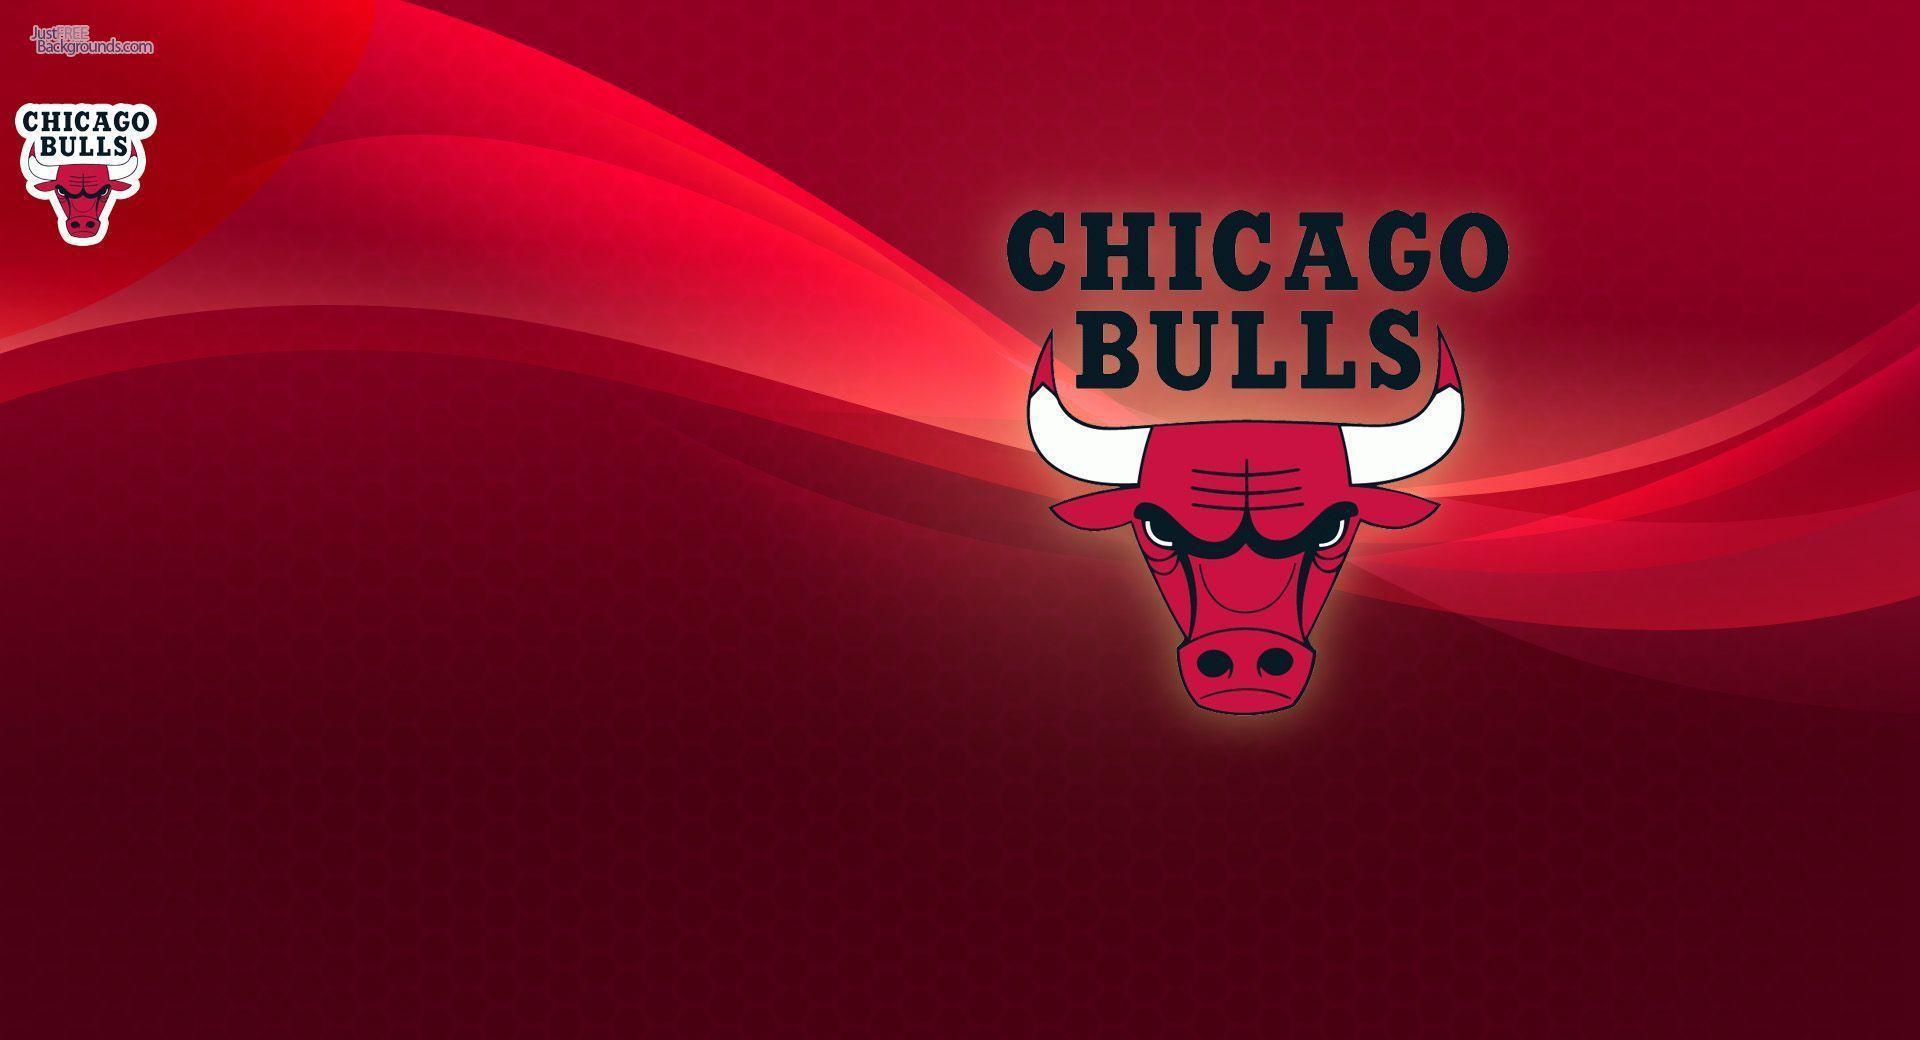 Chicago Bulls Wallpaper 30 24466 Image HD Wallpaper. Wallfoy.com